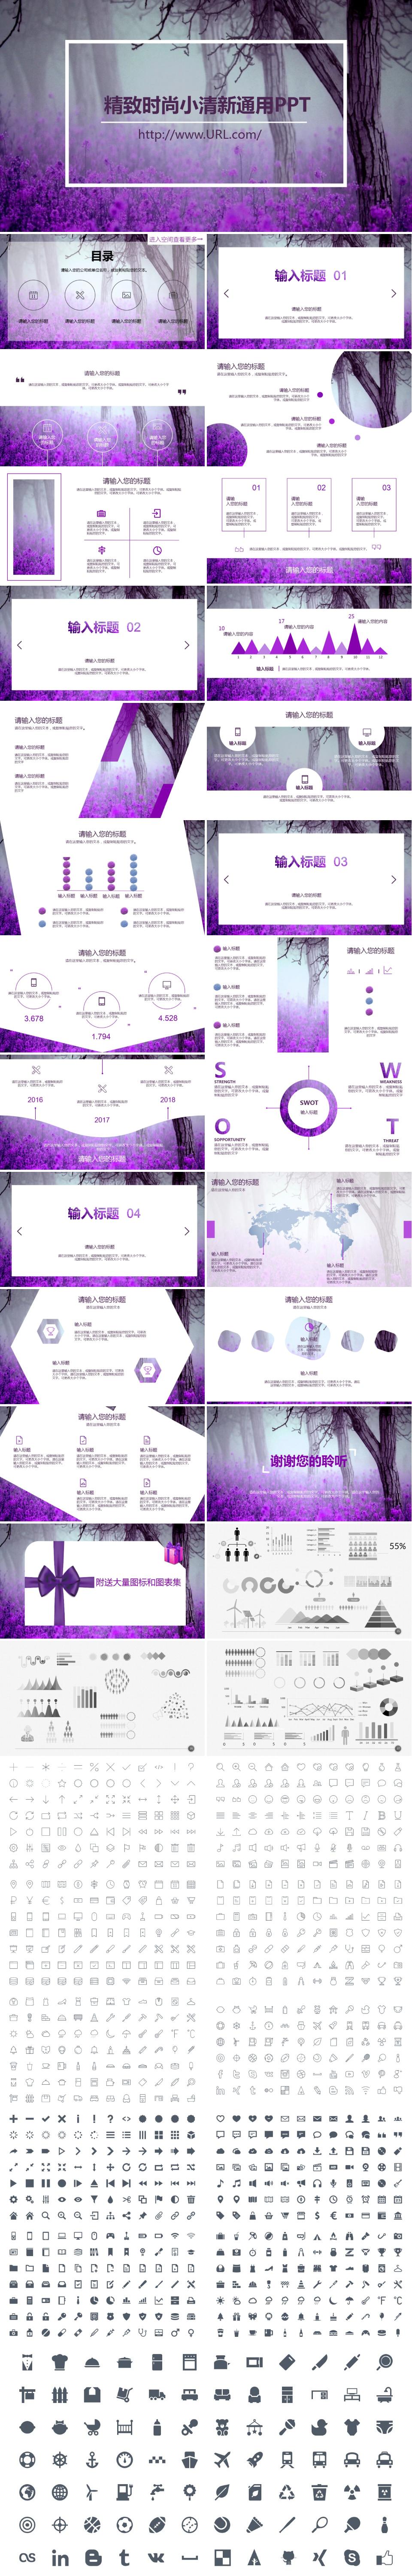 【清新】梦幻紫简约商务通用PPT模板 附送大量图标和图表